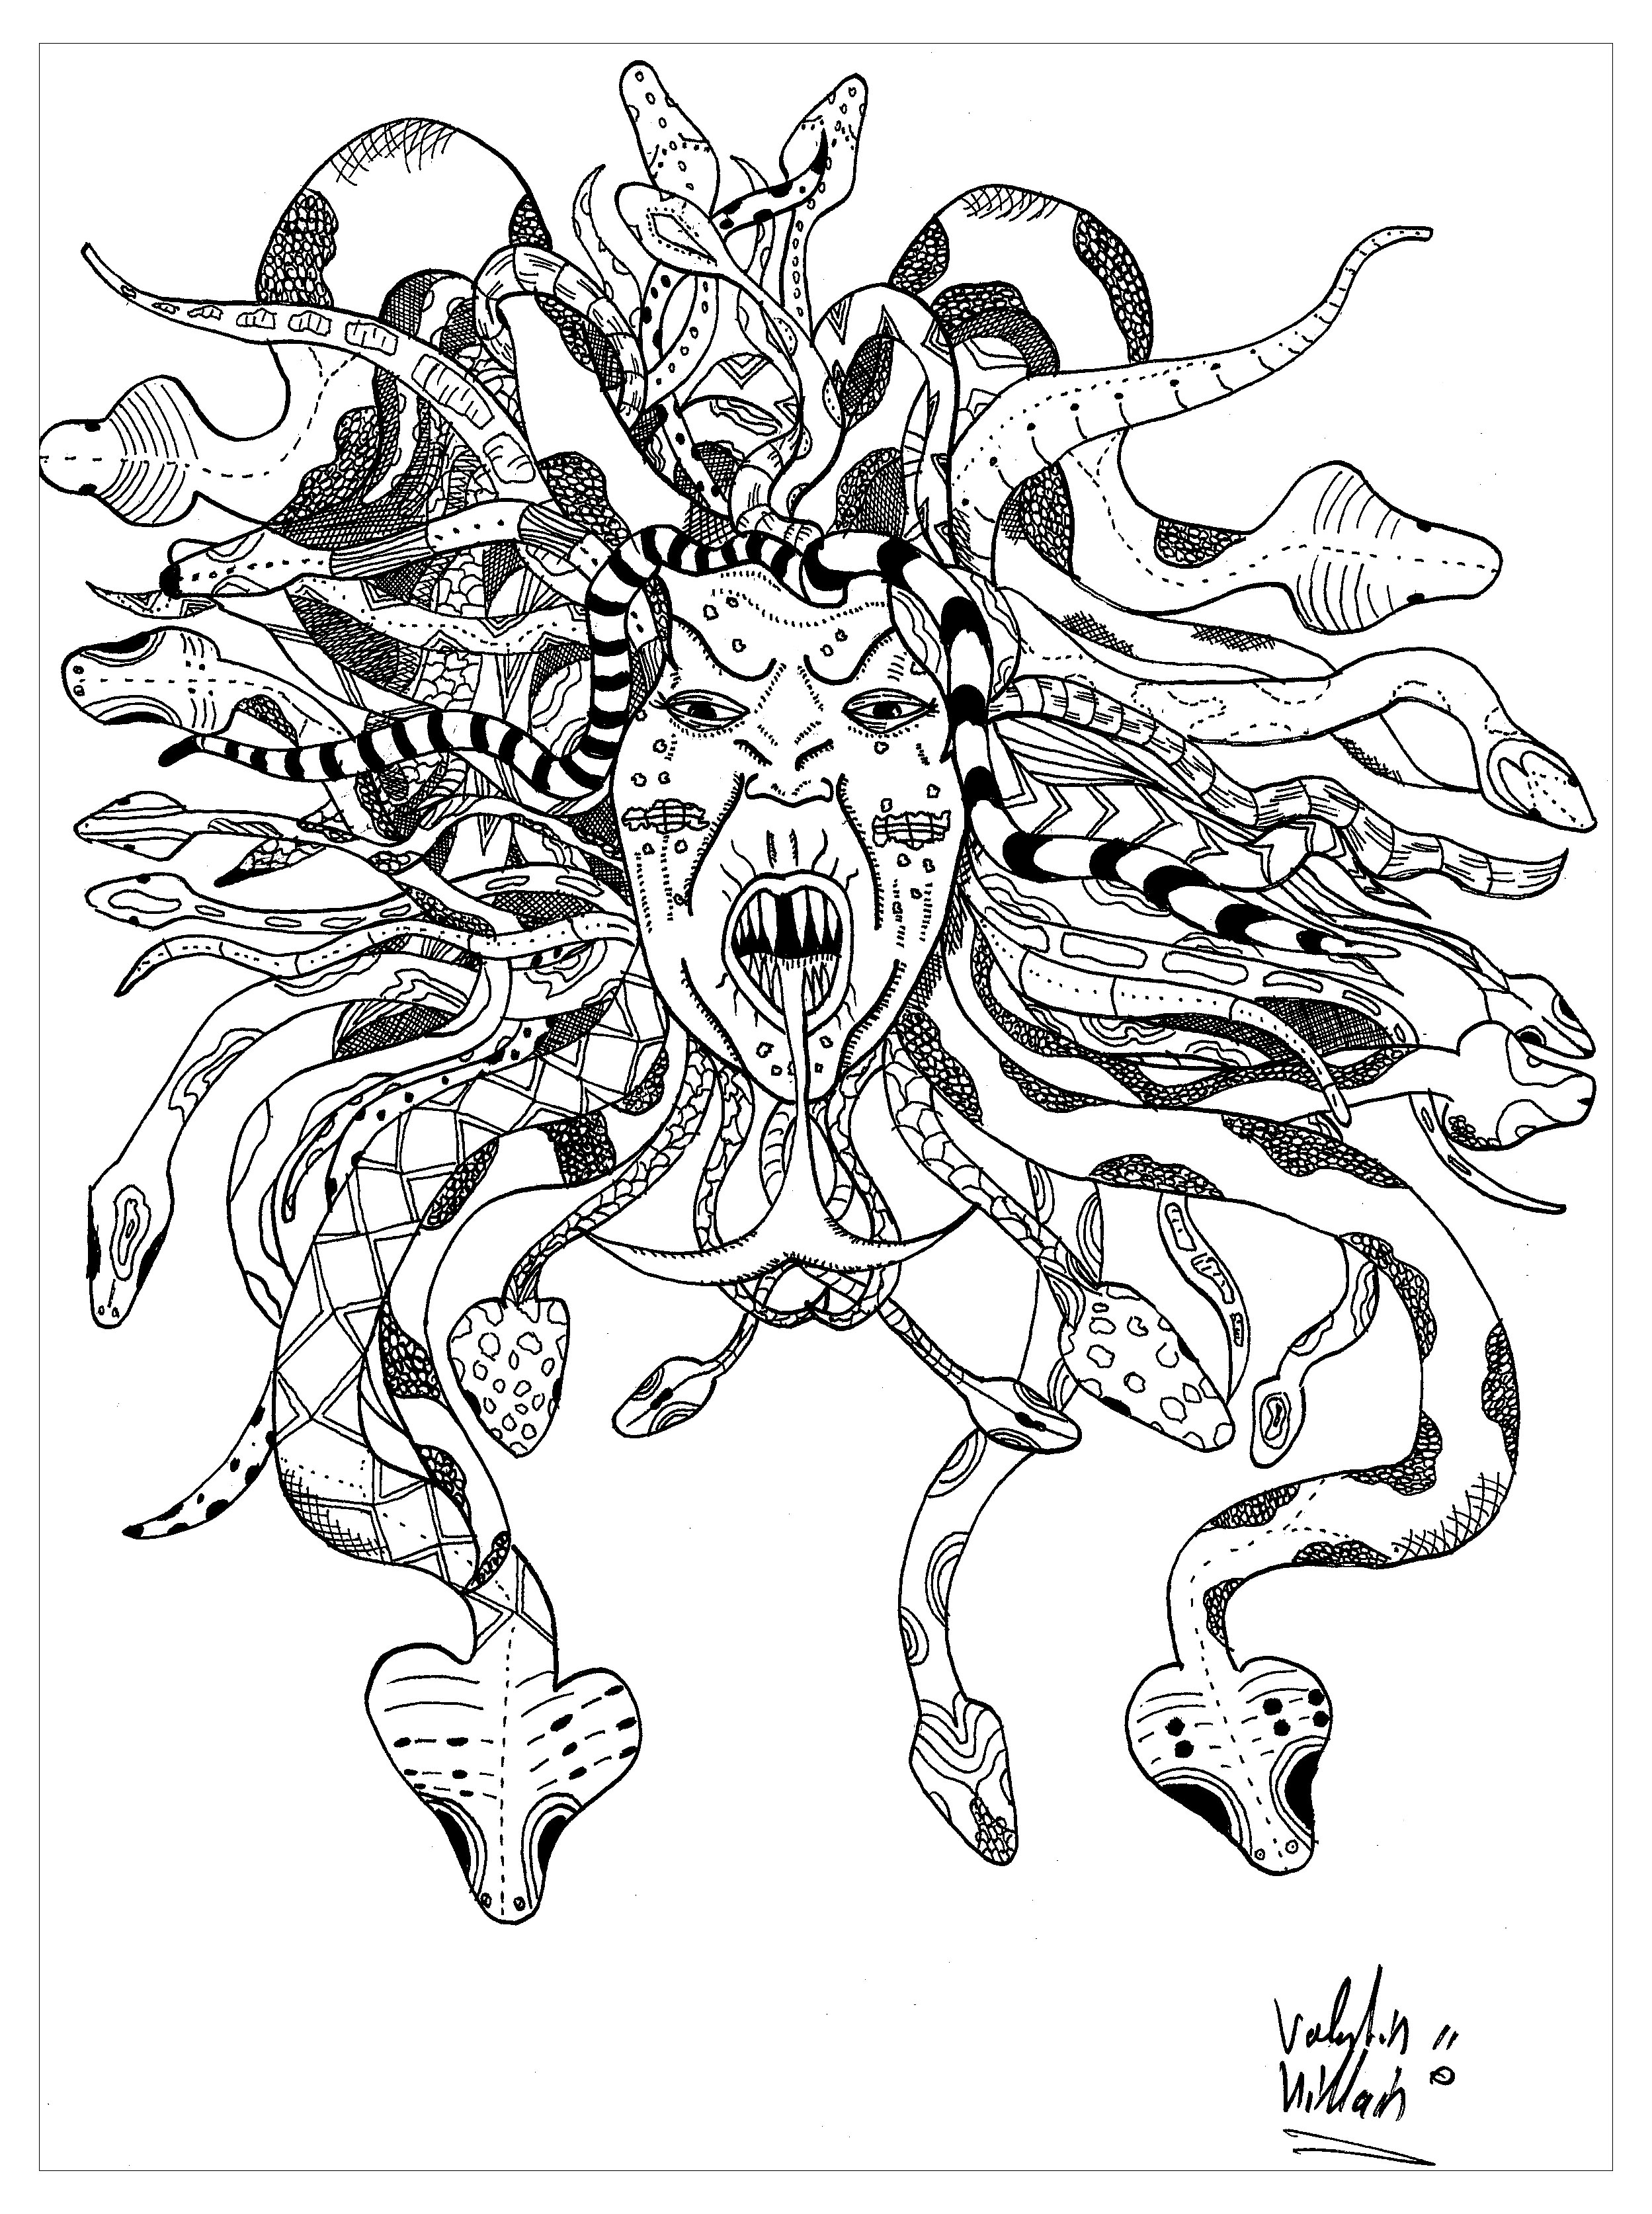 Colorear representando a Medusa. He aquí una magnífica representación de la mítica Gorgona Medusa. Su rostro está rodeado por una melena entrelazada con serpientes, lo que le confiere un aspecto terrorífico, Artista : Valentin